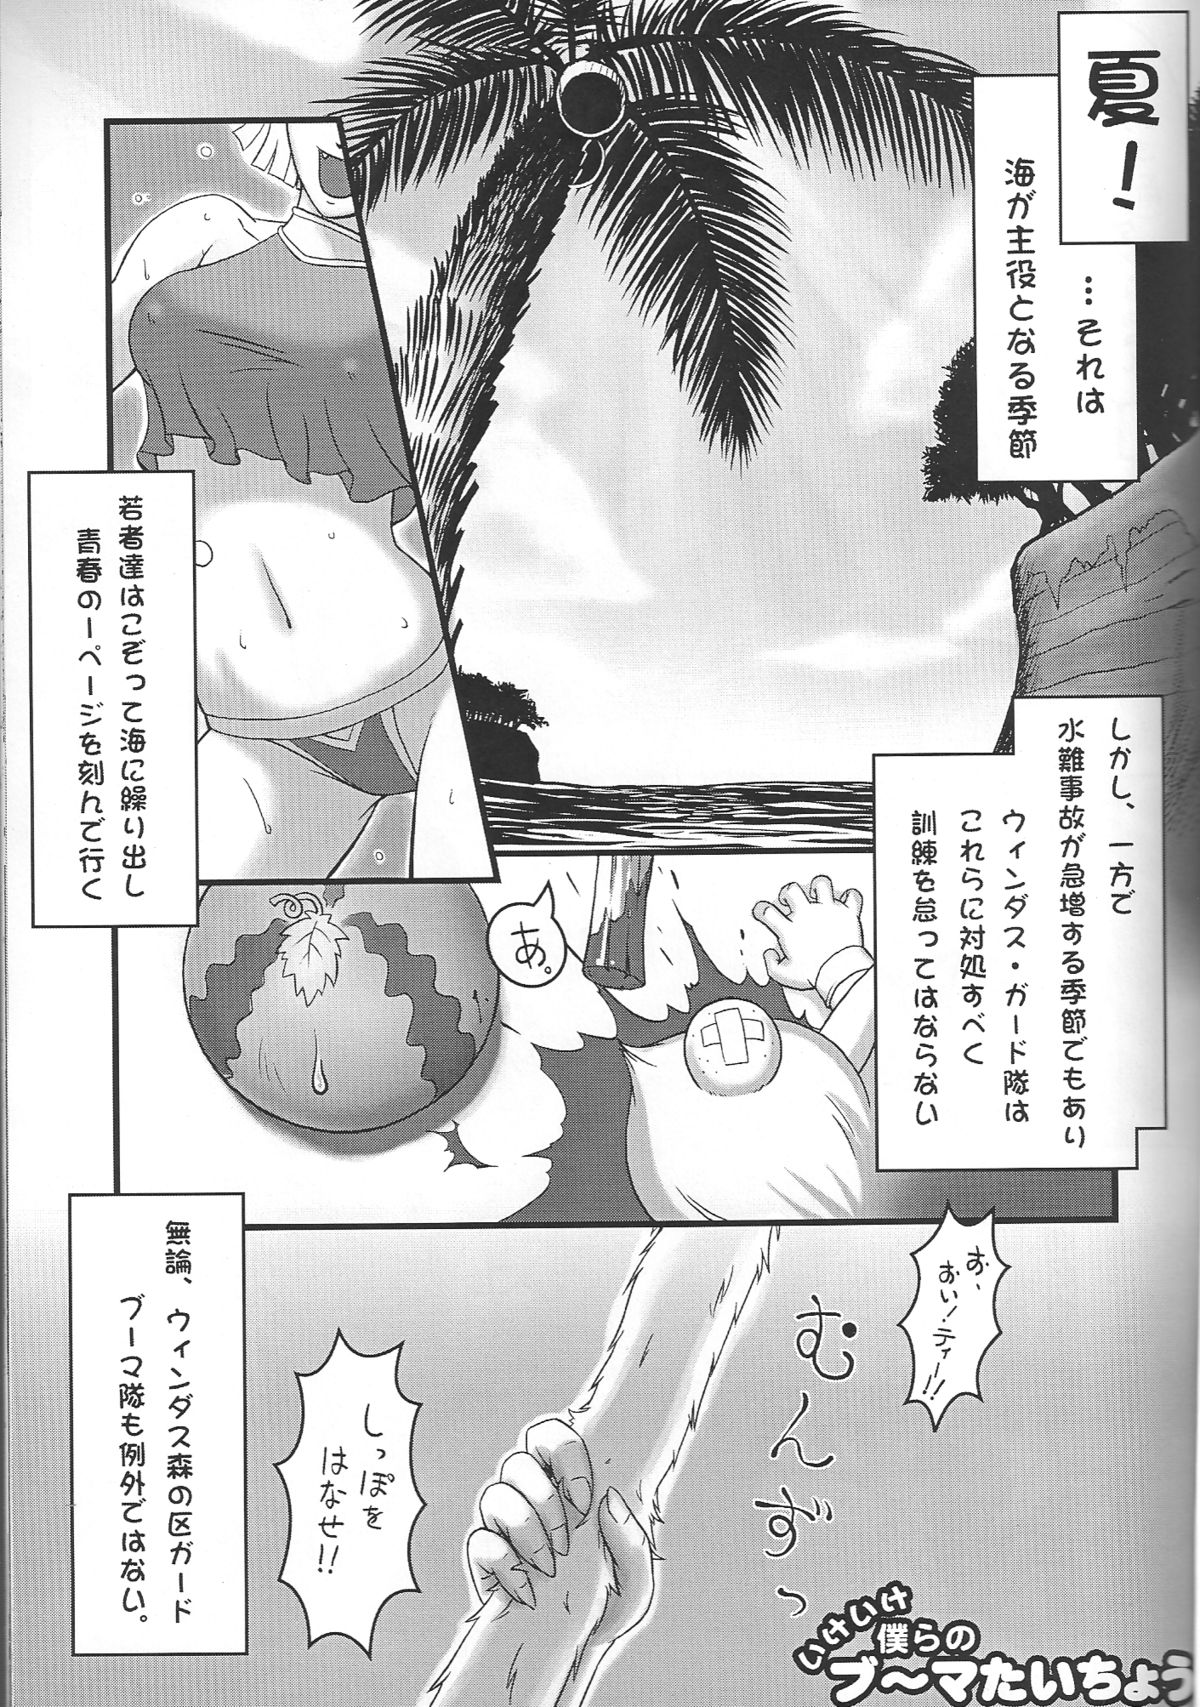 [Kezukuroi Kissa (Gochou)] Nande Mithra no Ashi Soubi ga Ashi o Mamottenai no wa Naze Nanda ze? Plus (Final Fantasy XI) [けづくろい喫茶 (たかねのはな)] なんでミスラの脚装備が脚を守っていないのはなぜなんだぜ? PLUS (ファイナルファンタジーXI)